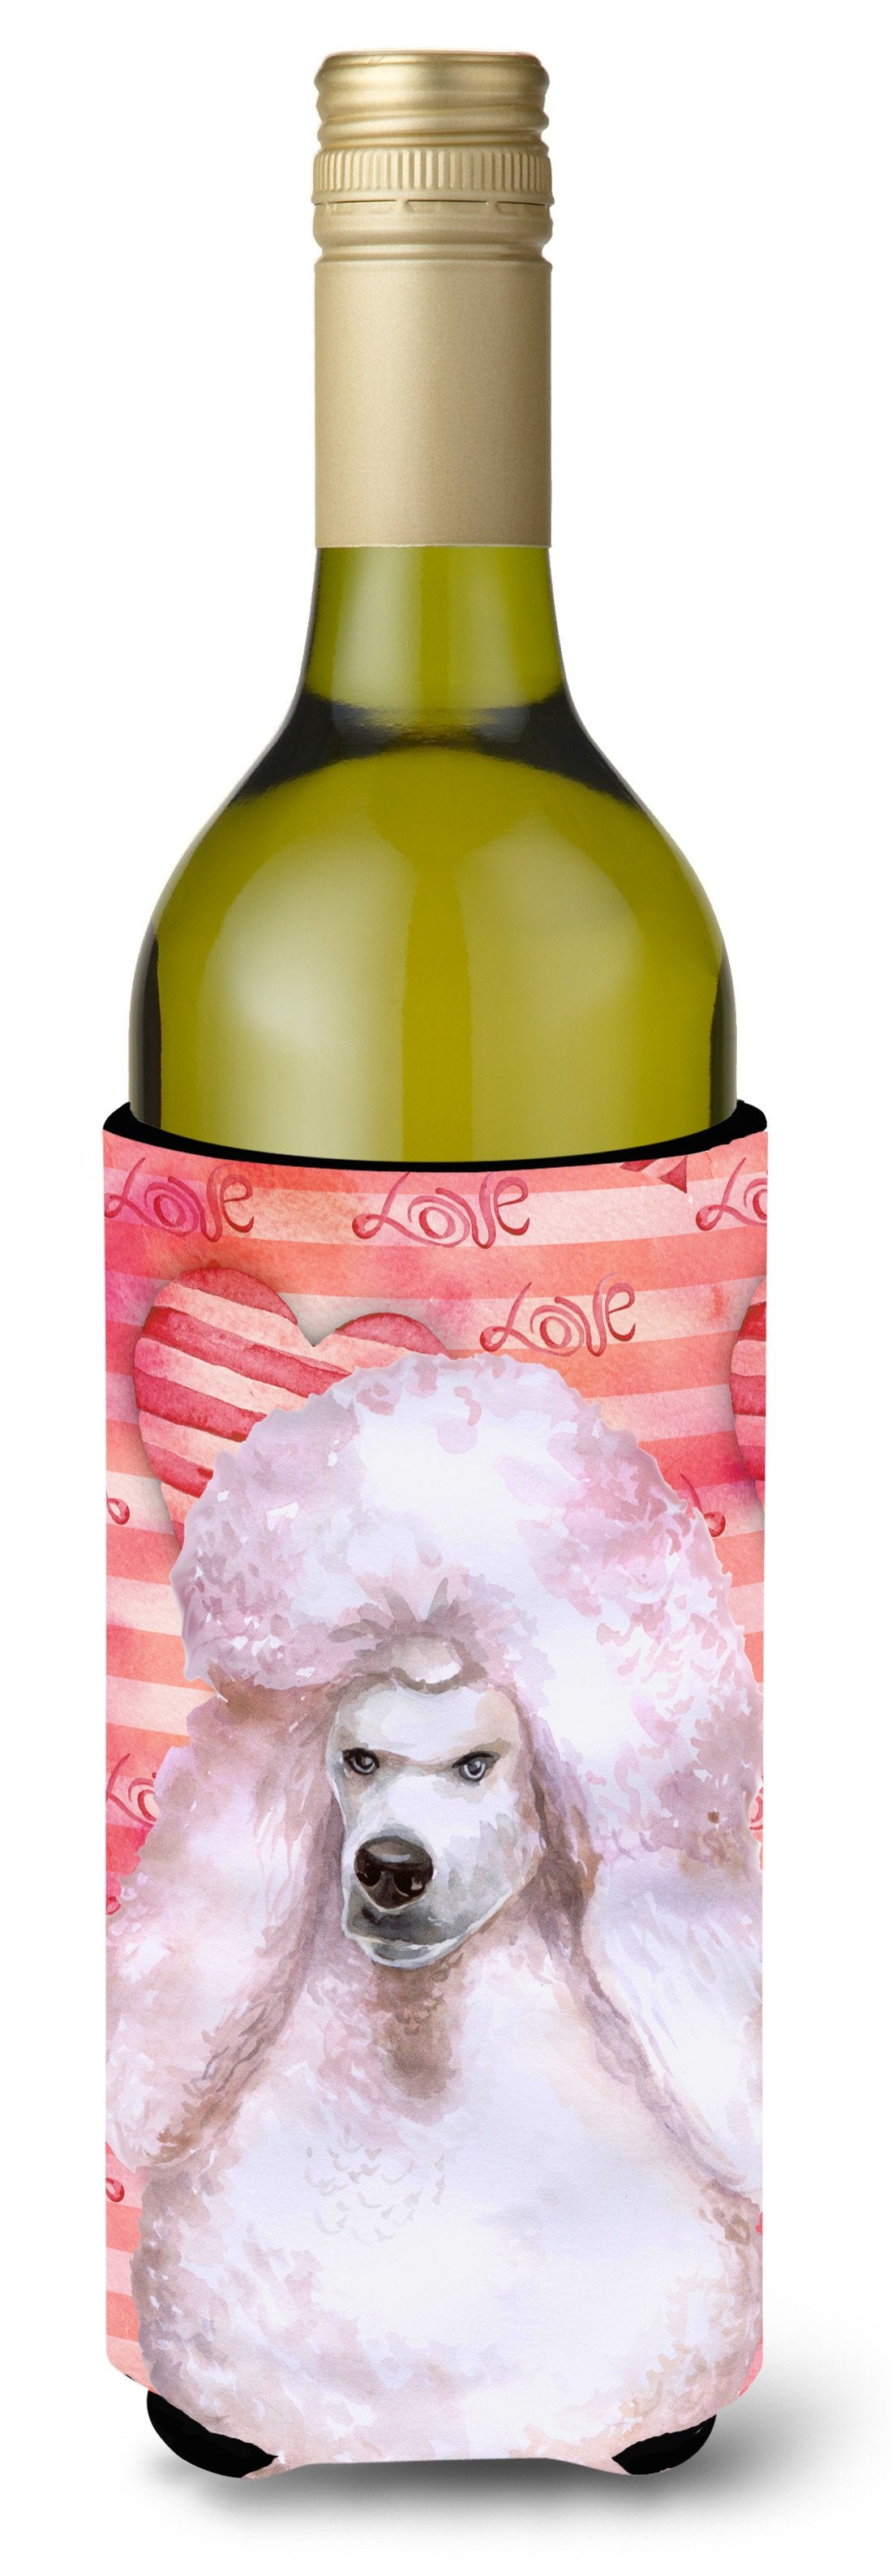 White Standard Poodle Love Wine Bottle Beverge Insulator Hugger BB9804LITERK by Caroline's Treasures